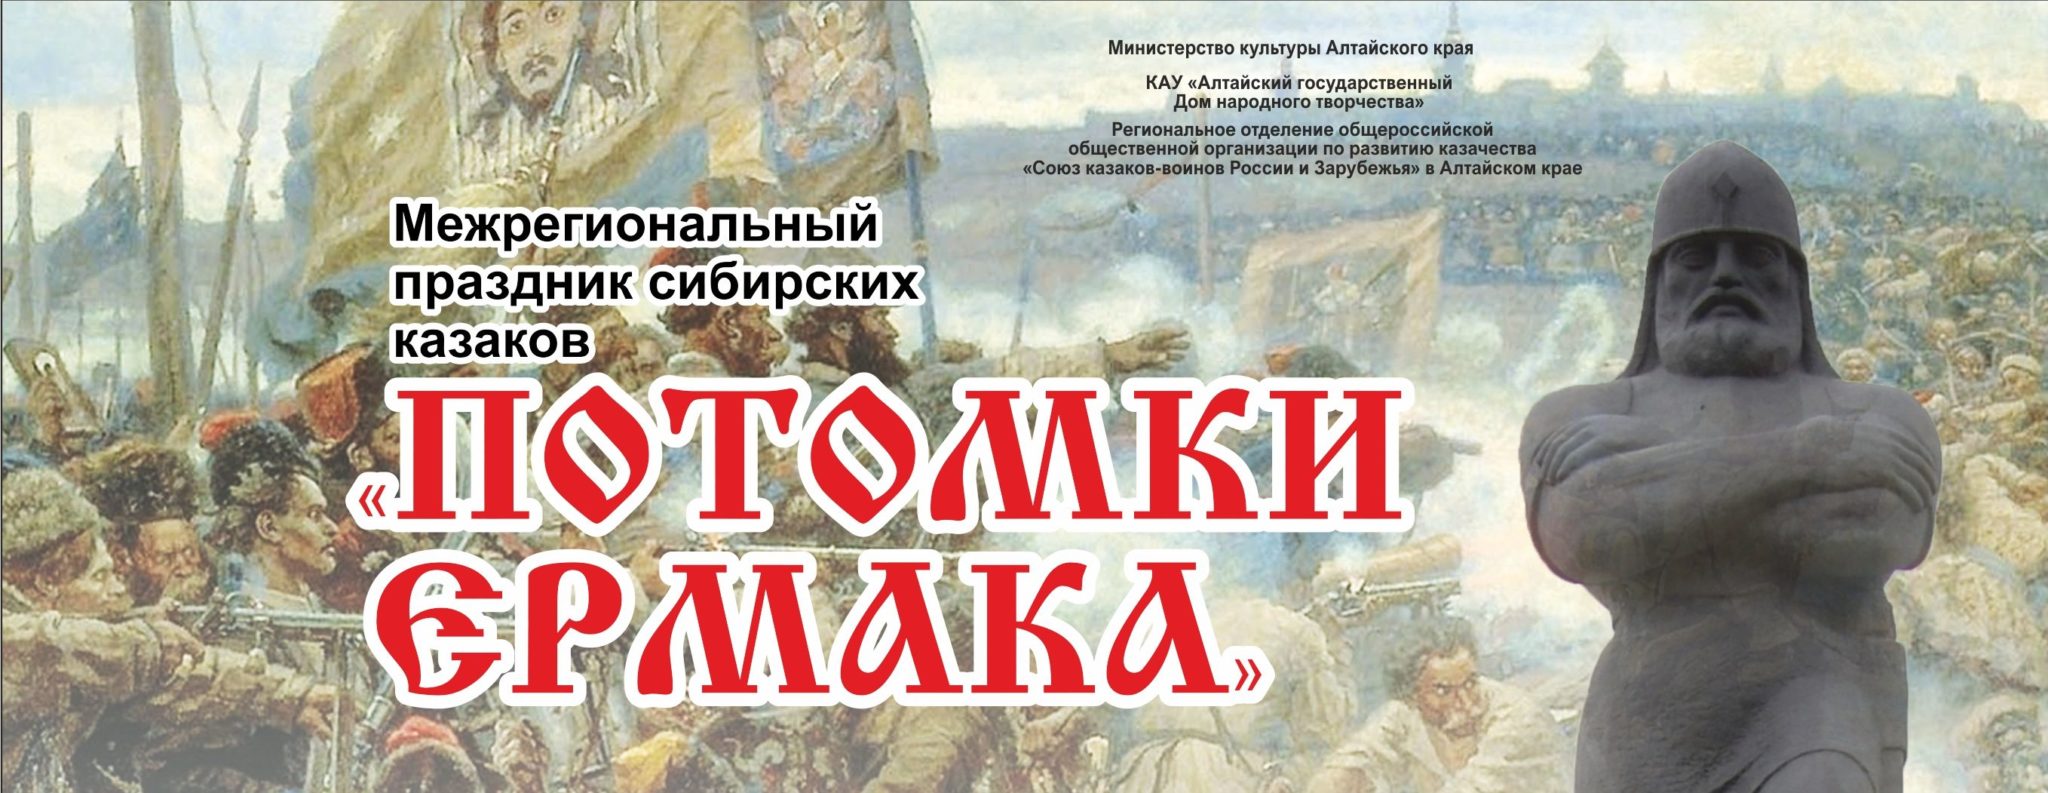 Продолжается приём заявок на участие в Межрегиональном празднике сибирских казаков «Потомки Ермака»